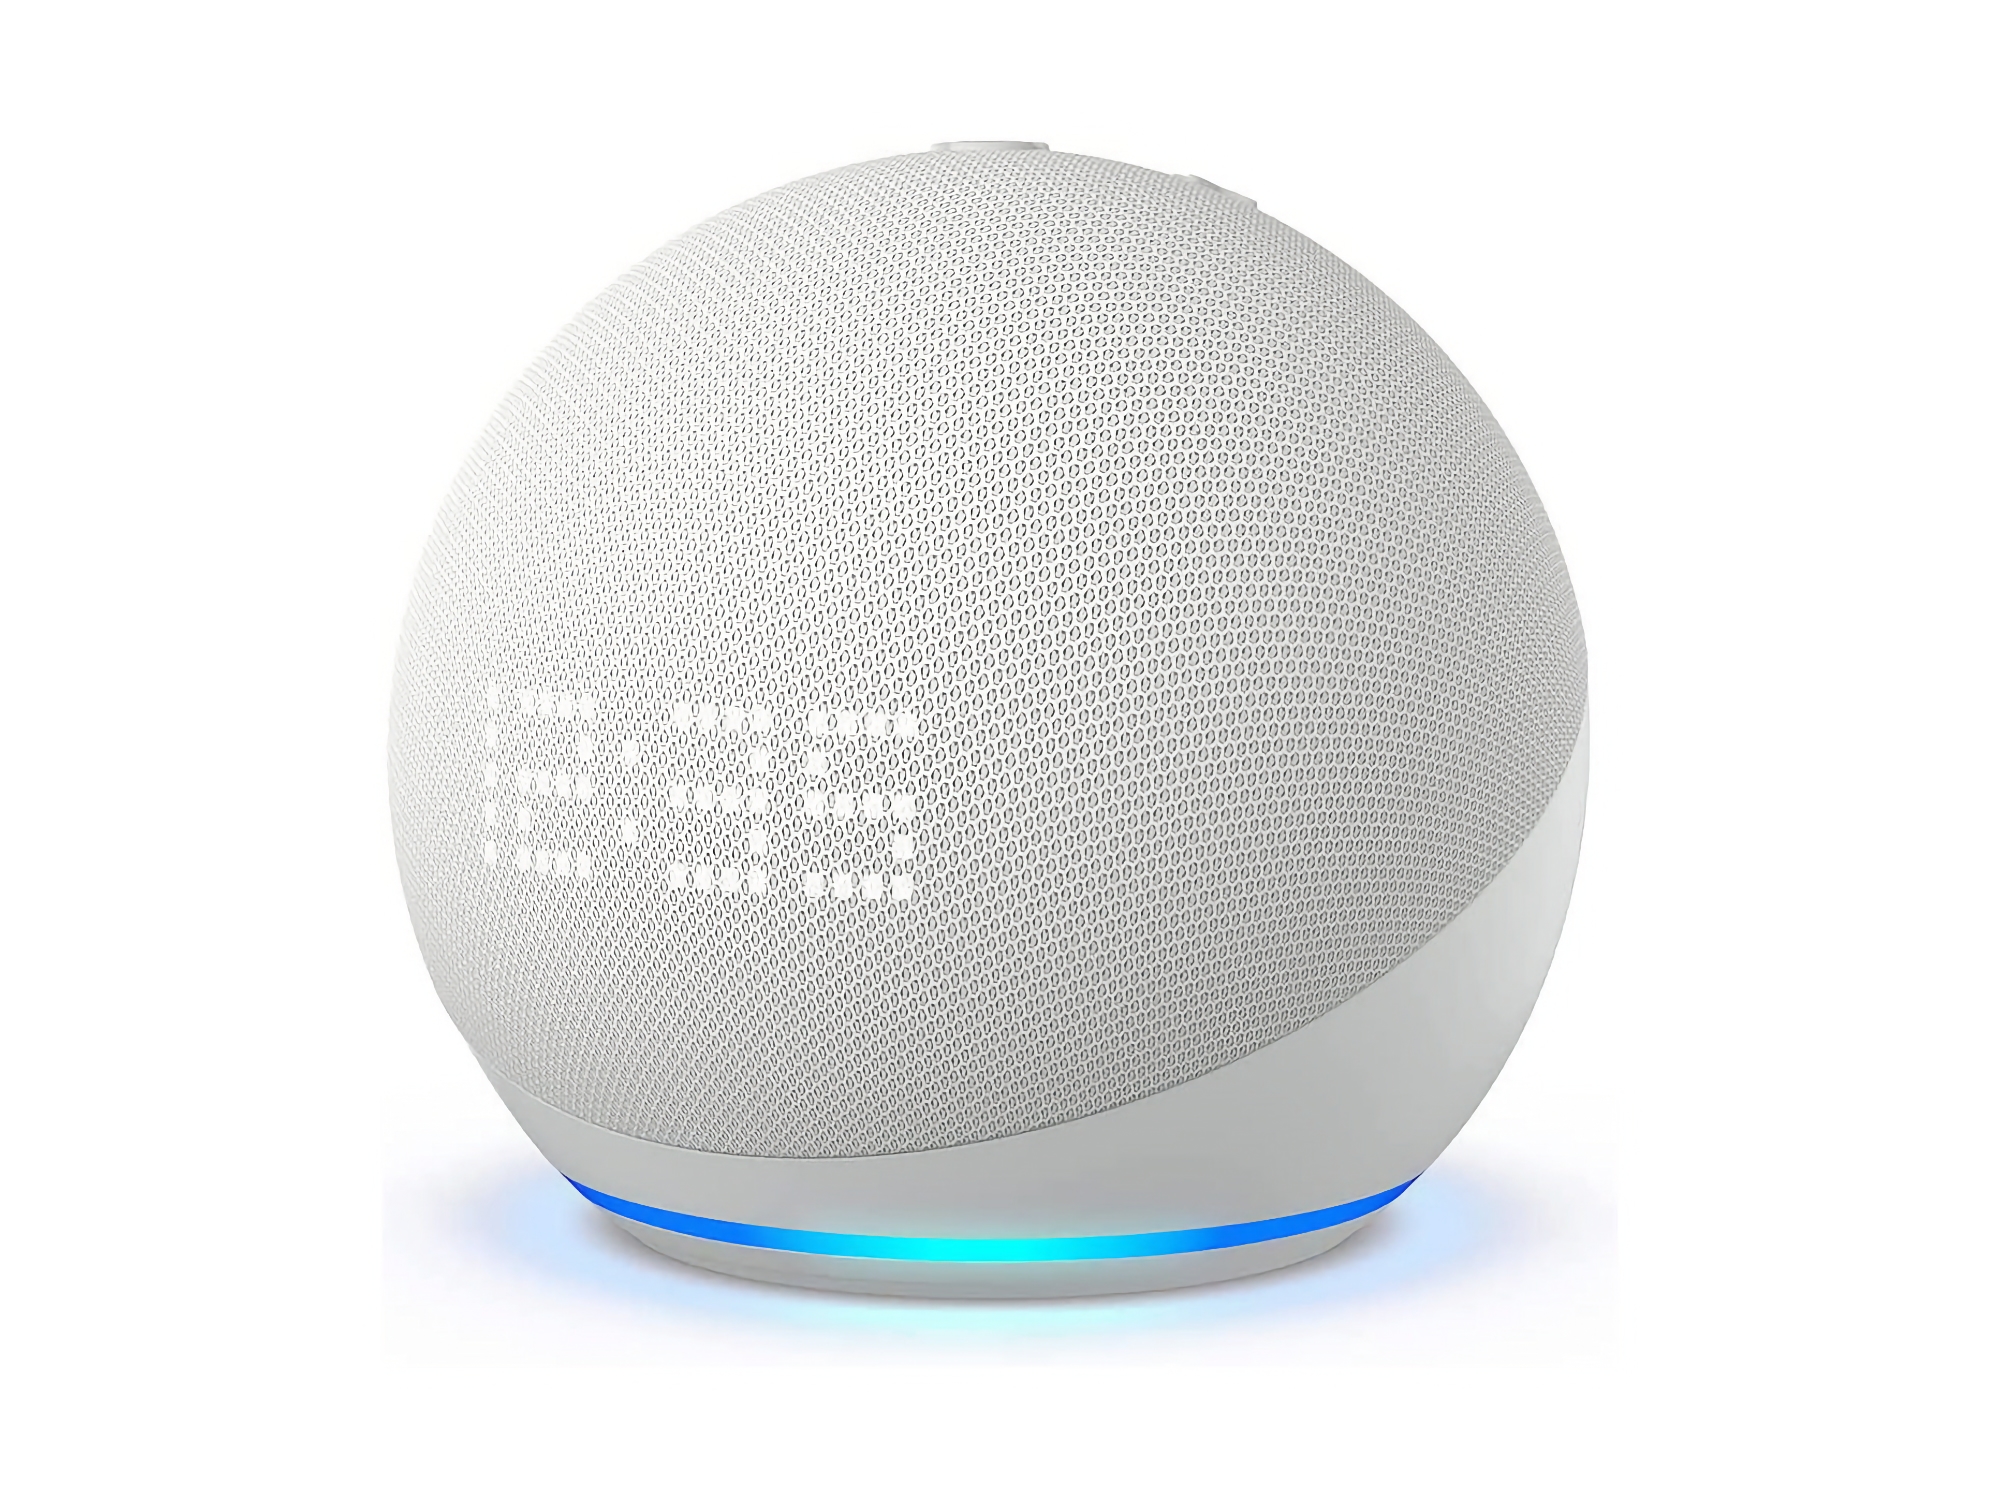 Amazon senkt den Preis des Echo Dot 5 Gen: ein intelligenter Lautsprecher mit eingebauter Uhr und Alexa für 39 Dollar